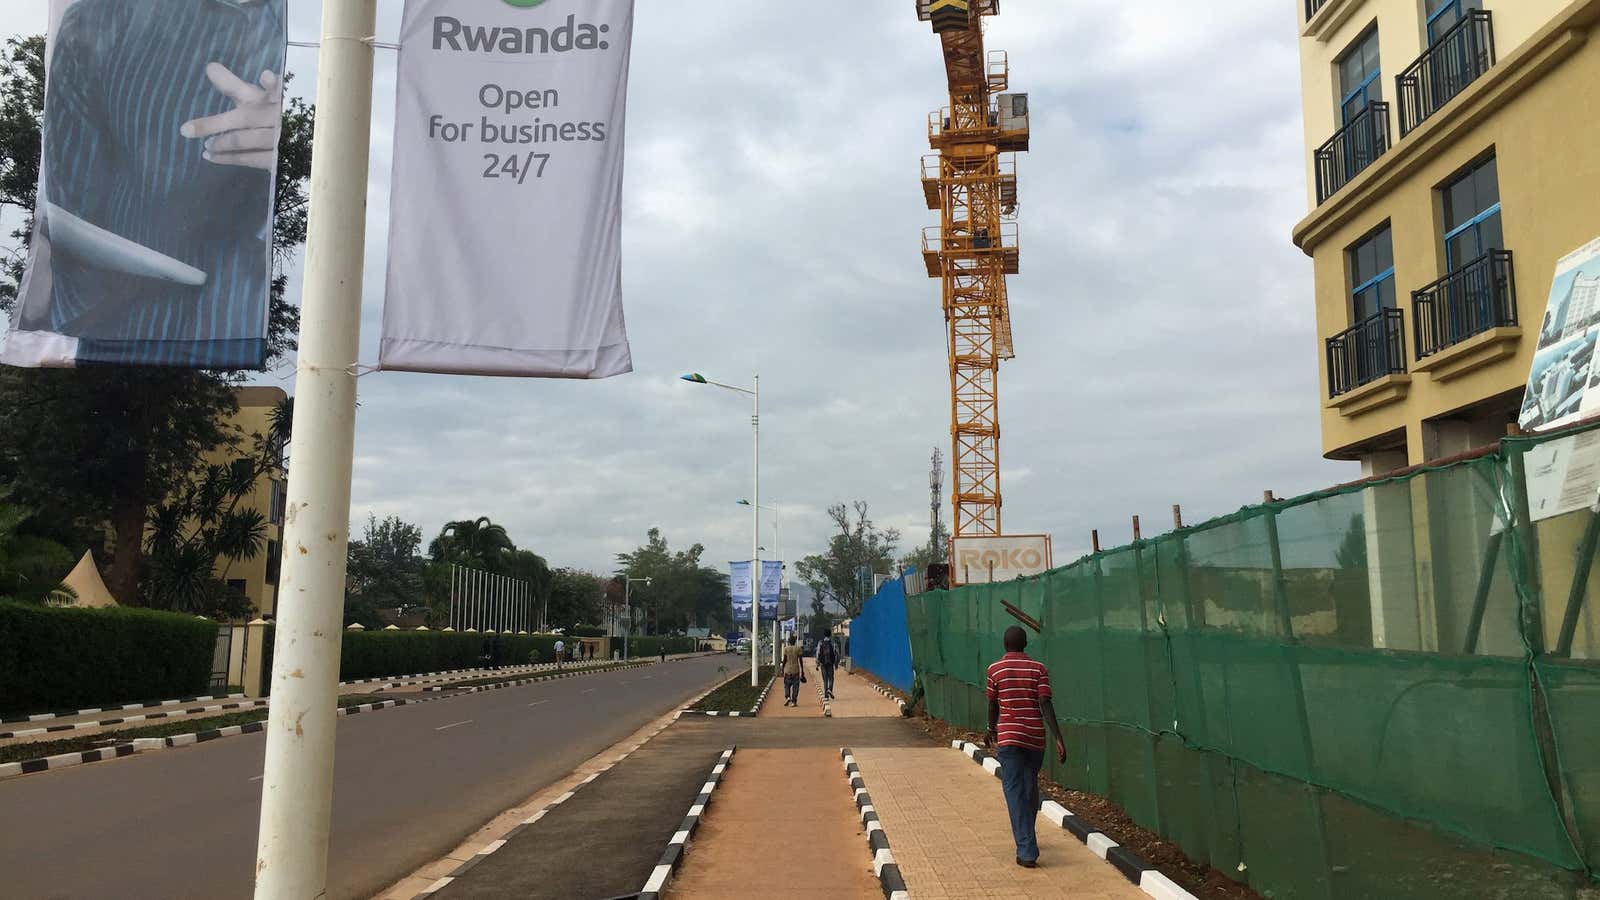 Kigali’s open roads.